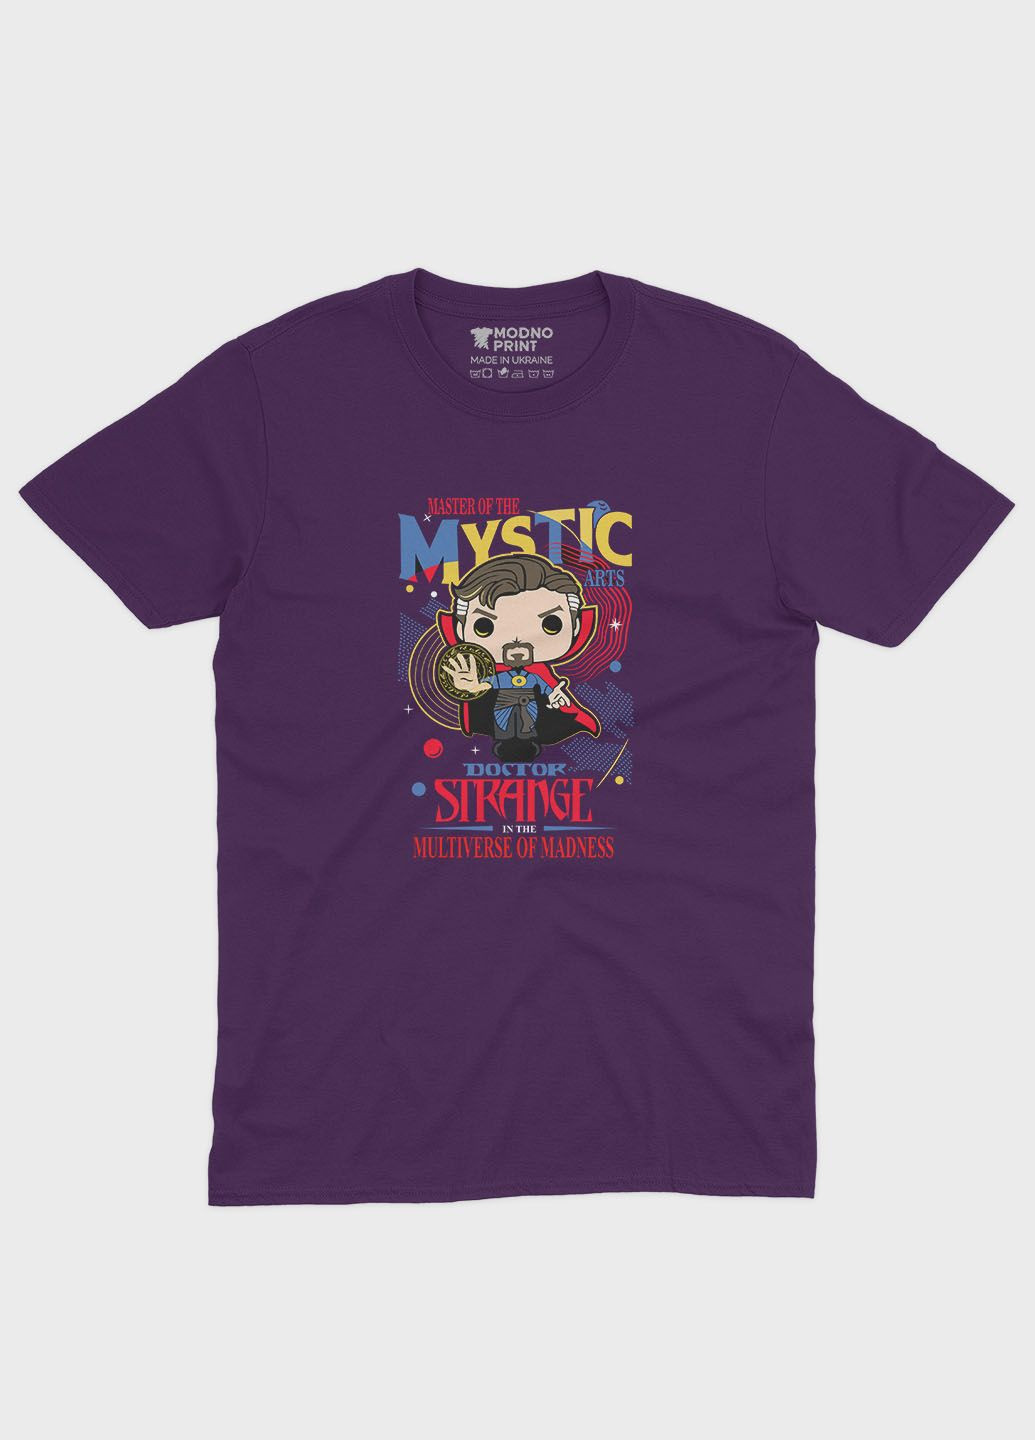 Фиолетовая демисезонная футболка для девочки с принтом супергероя - доктор стрэндж (ts001-1-dby-006-020-006-g) Modno